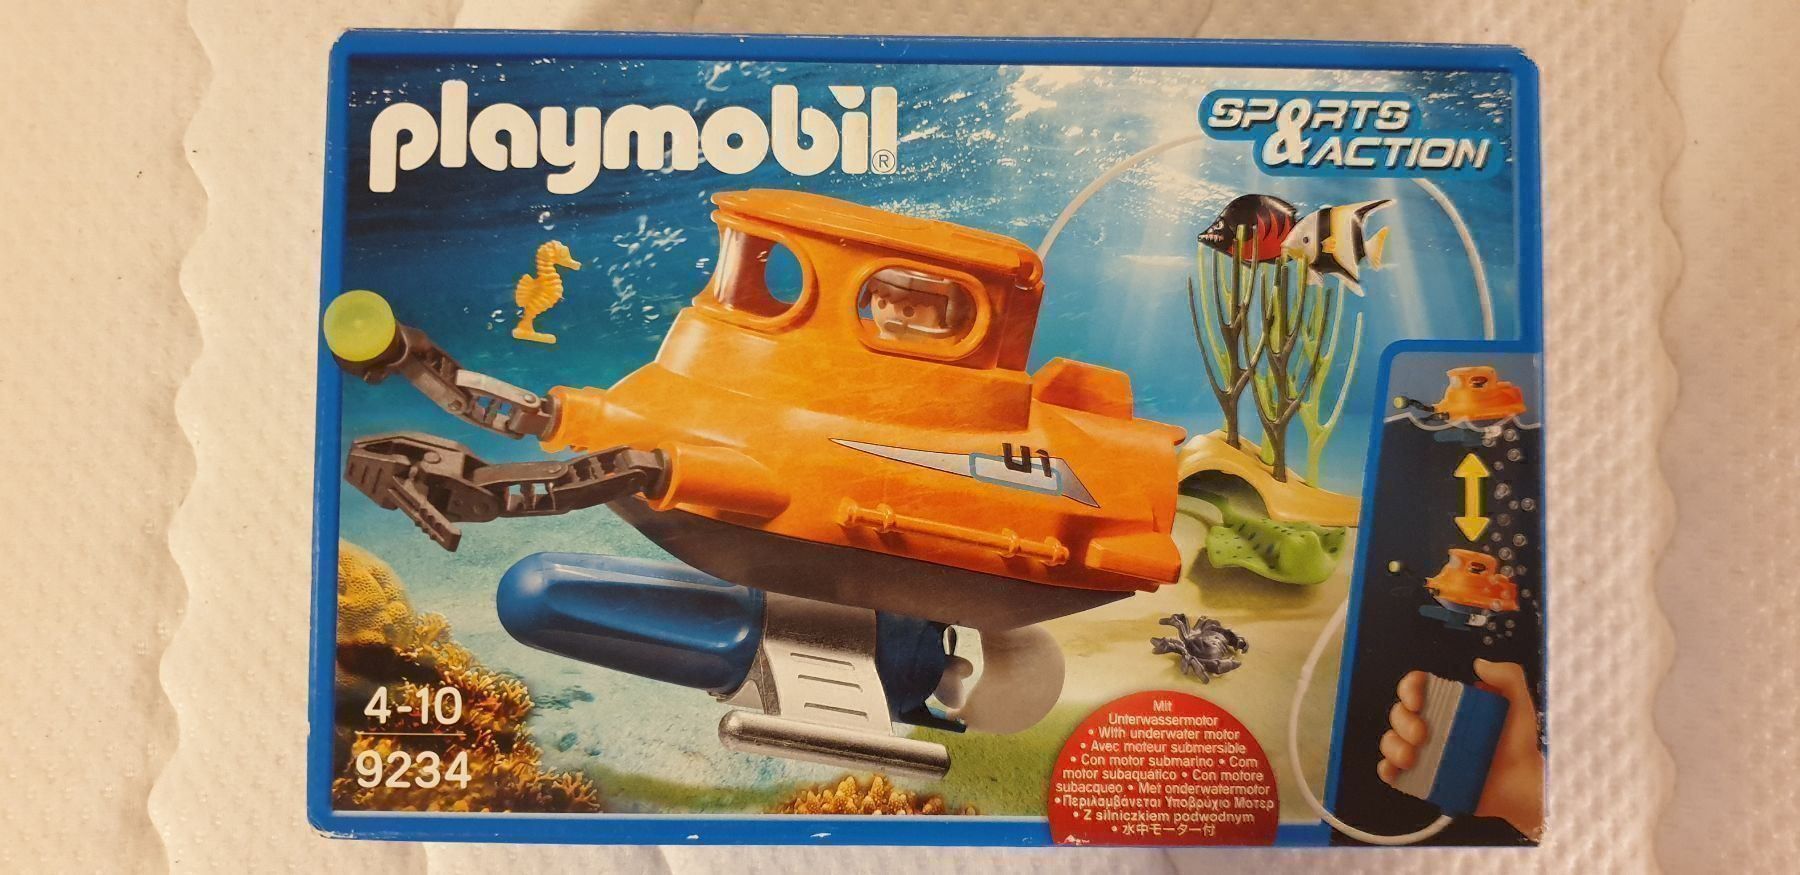 9234 playmobil